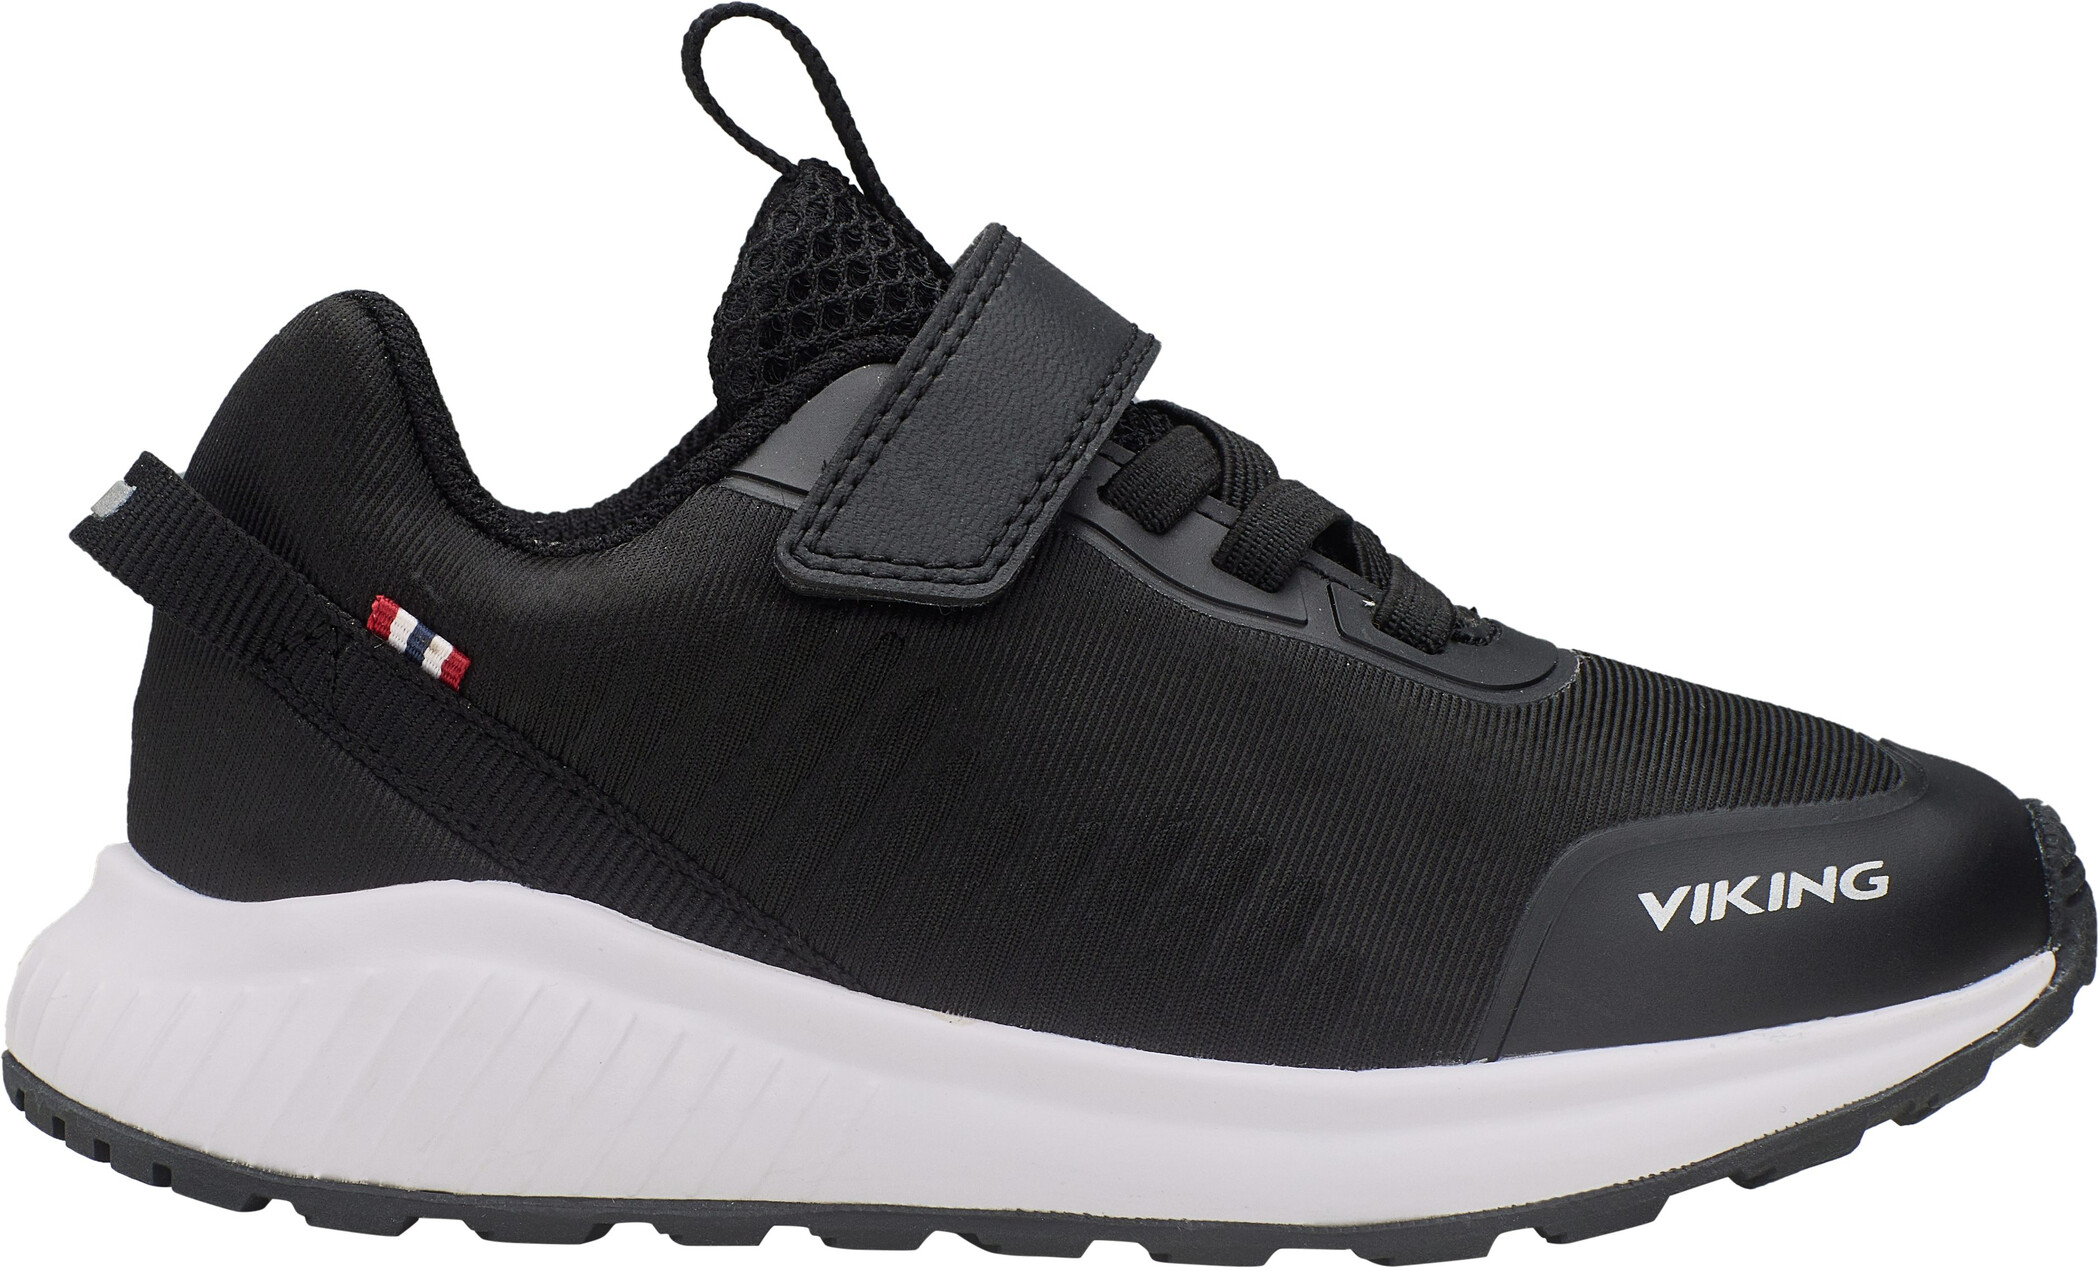 Viking Footwear Aery Tau GTX Low-Cut Schuhe Kinder schwarz/weiß